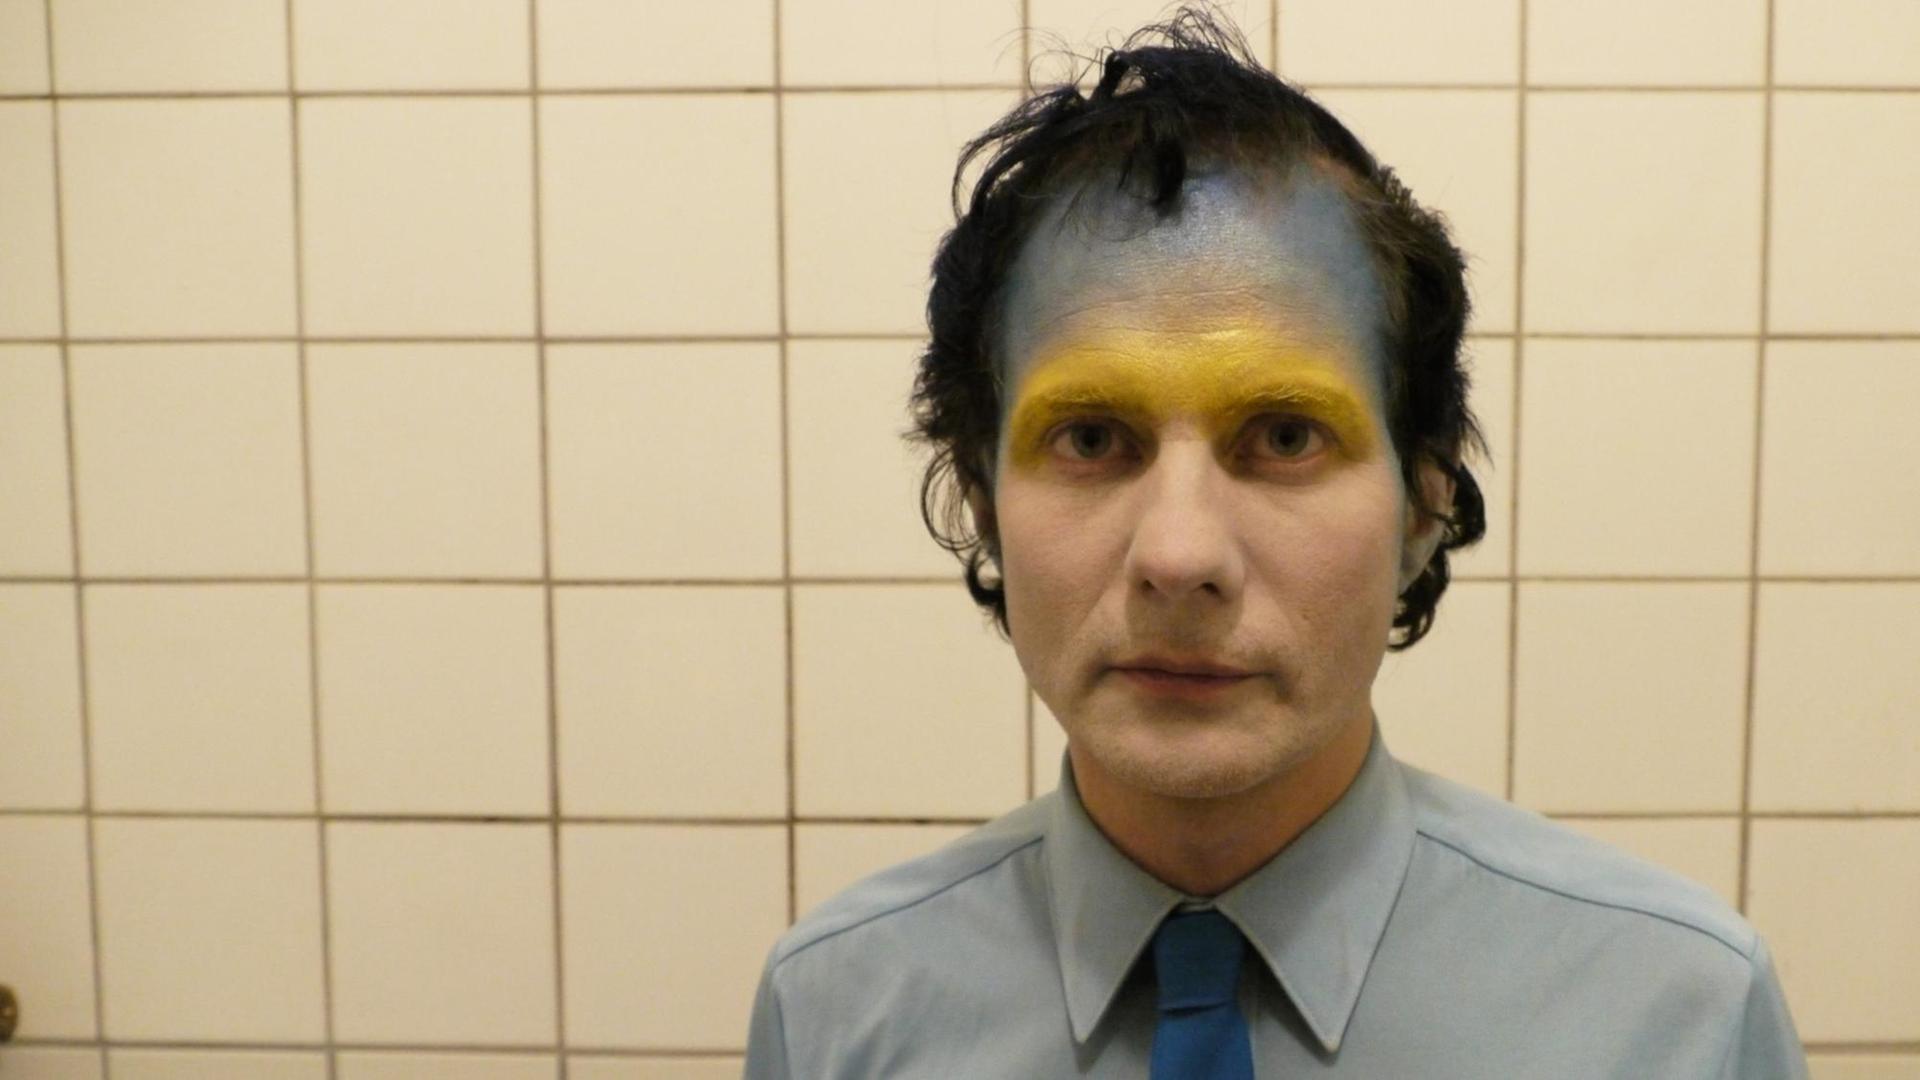 Felix Kubin, im Bad fotografiert, im Gesicht goldene und blaue Farbe.